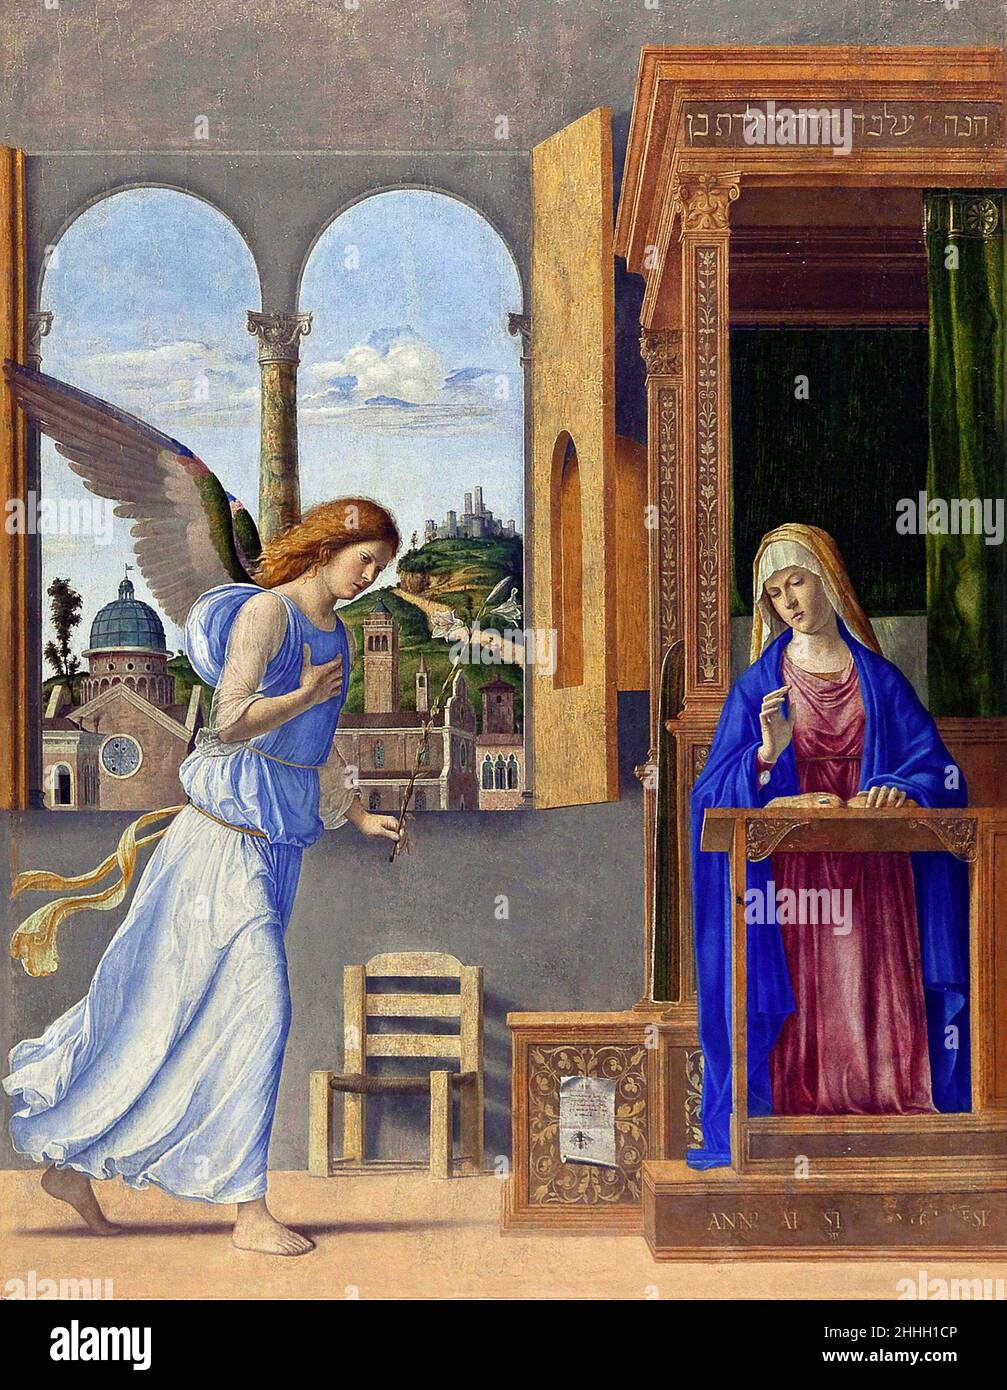 Annonciation de l'artiste italien de la Renaissance, Giovanni Battista Cima da Conegliano (c.1459 - c.1517), huile sur toile, 1495 Banque D'Images